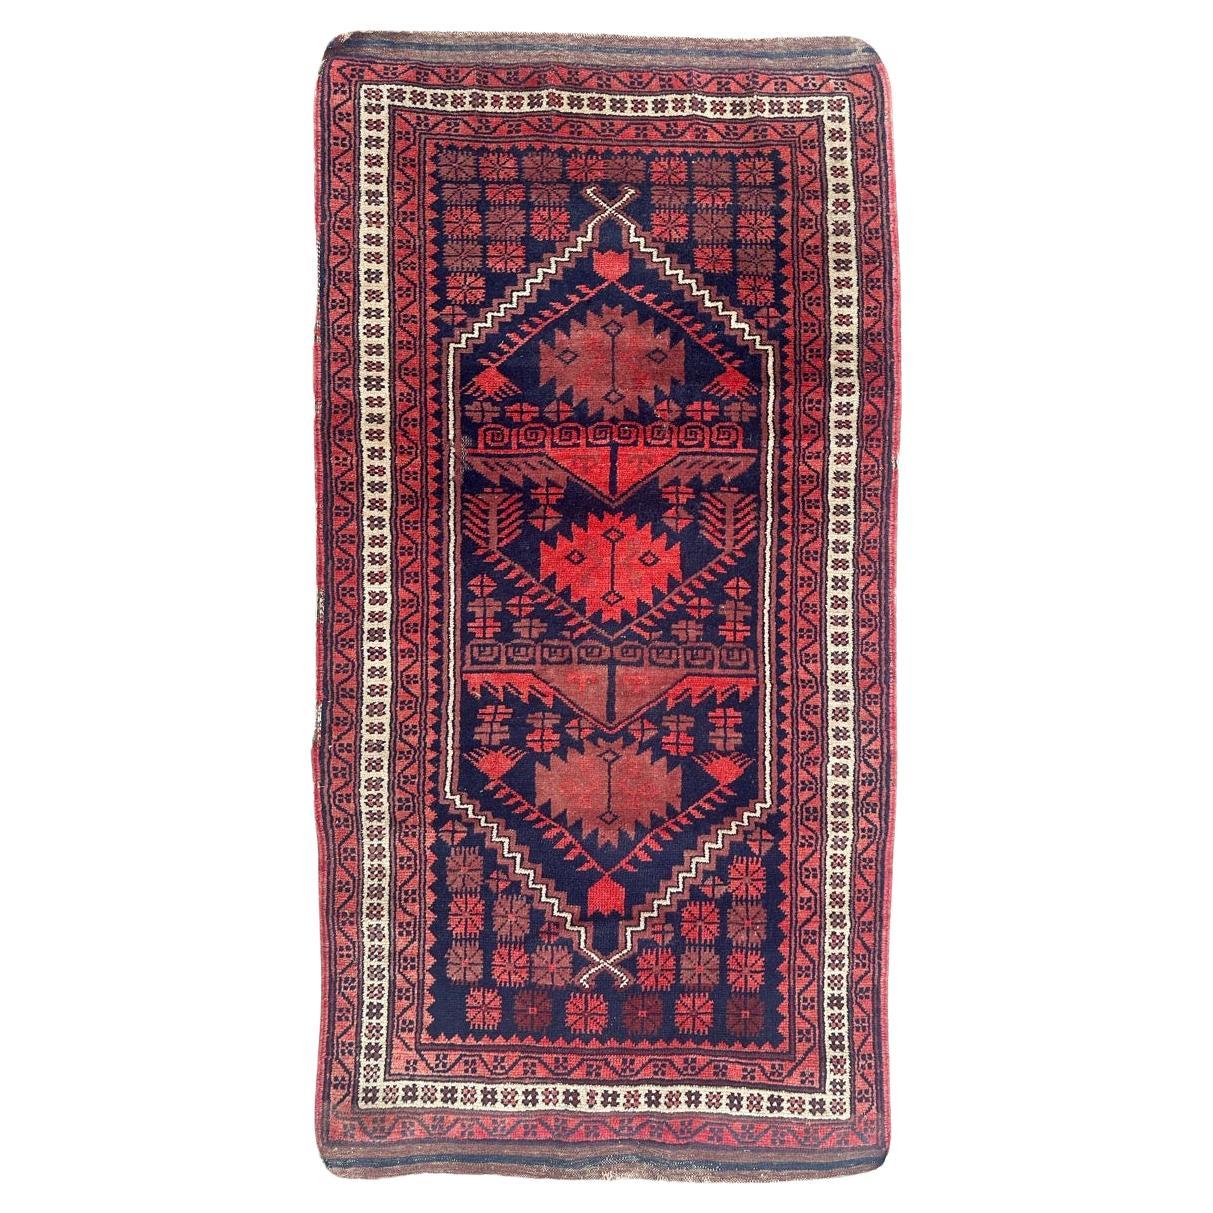 Le beau tapis turc vintage de Bobyrug 